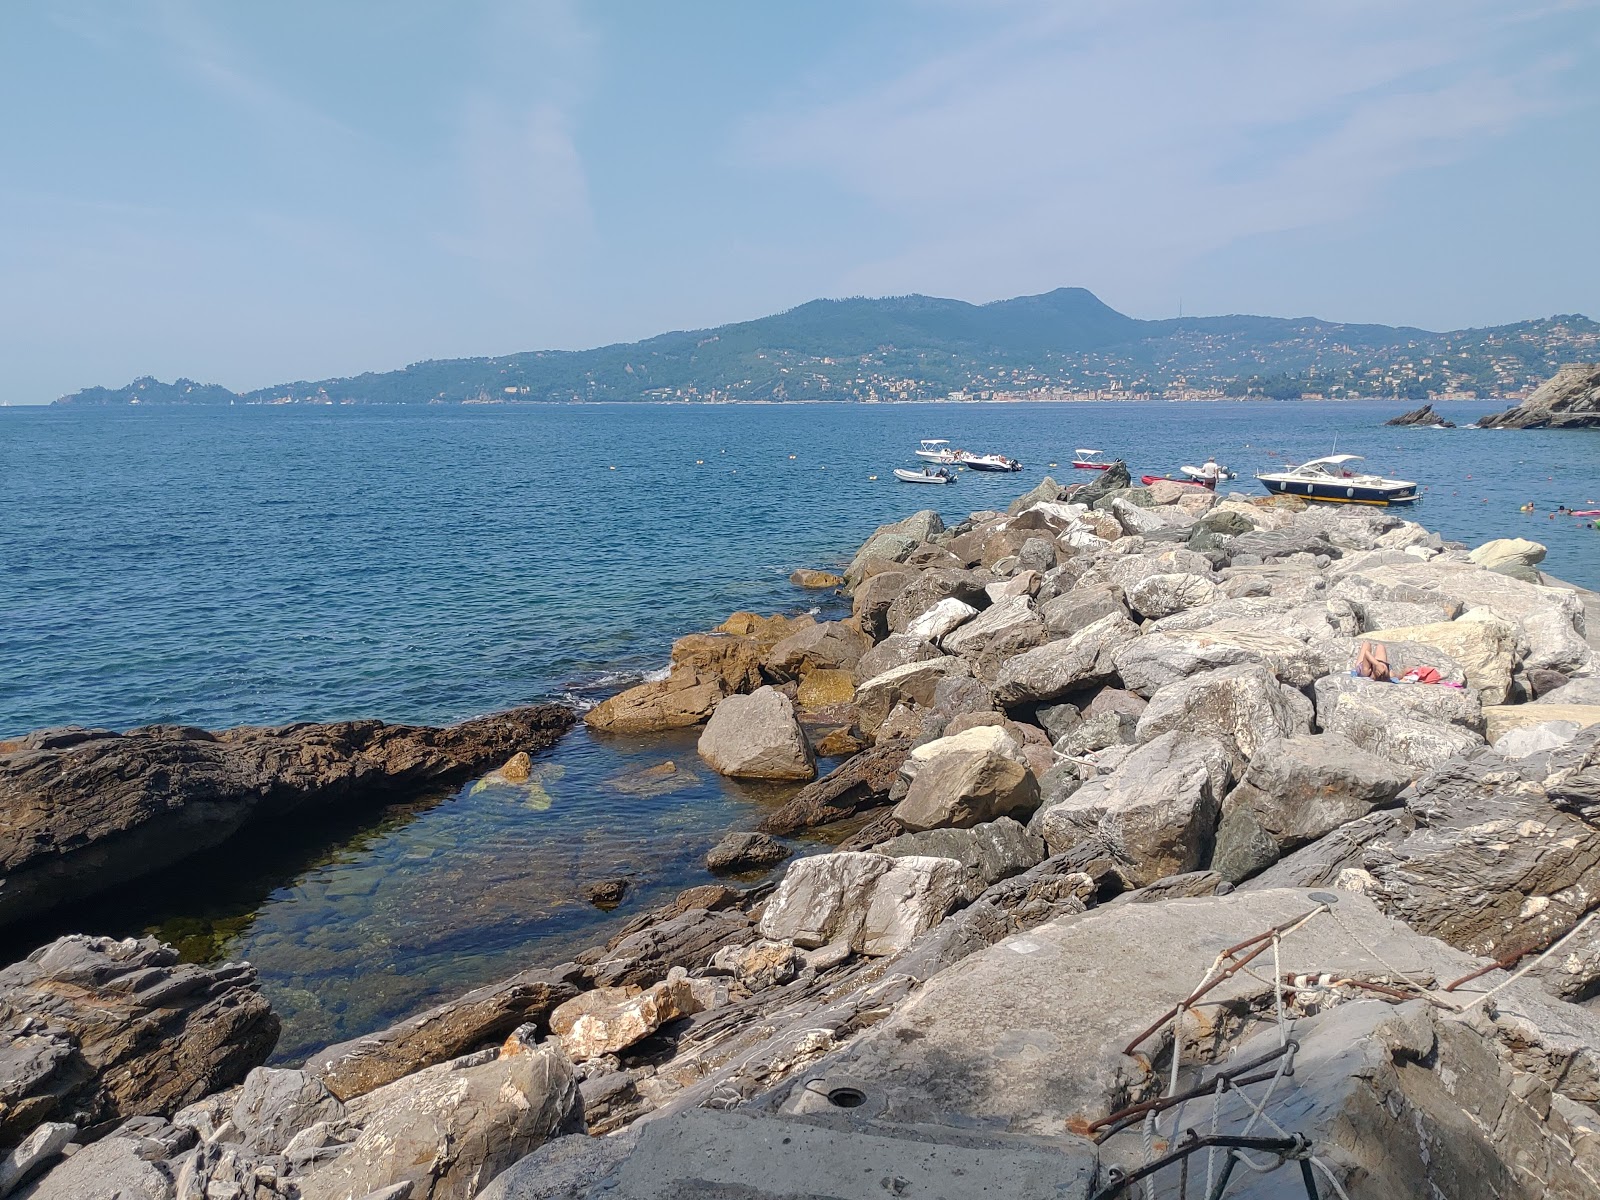 Pozzetto Spiaggia'in fotoğrafı kısmen temiz temizlik seviyesi ile